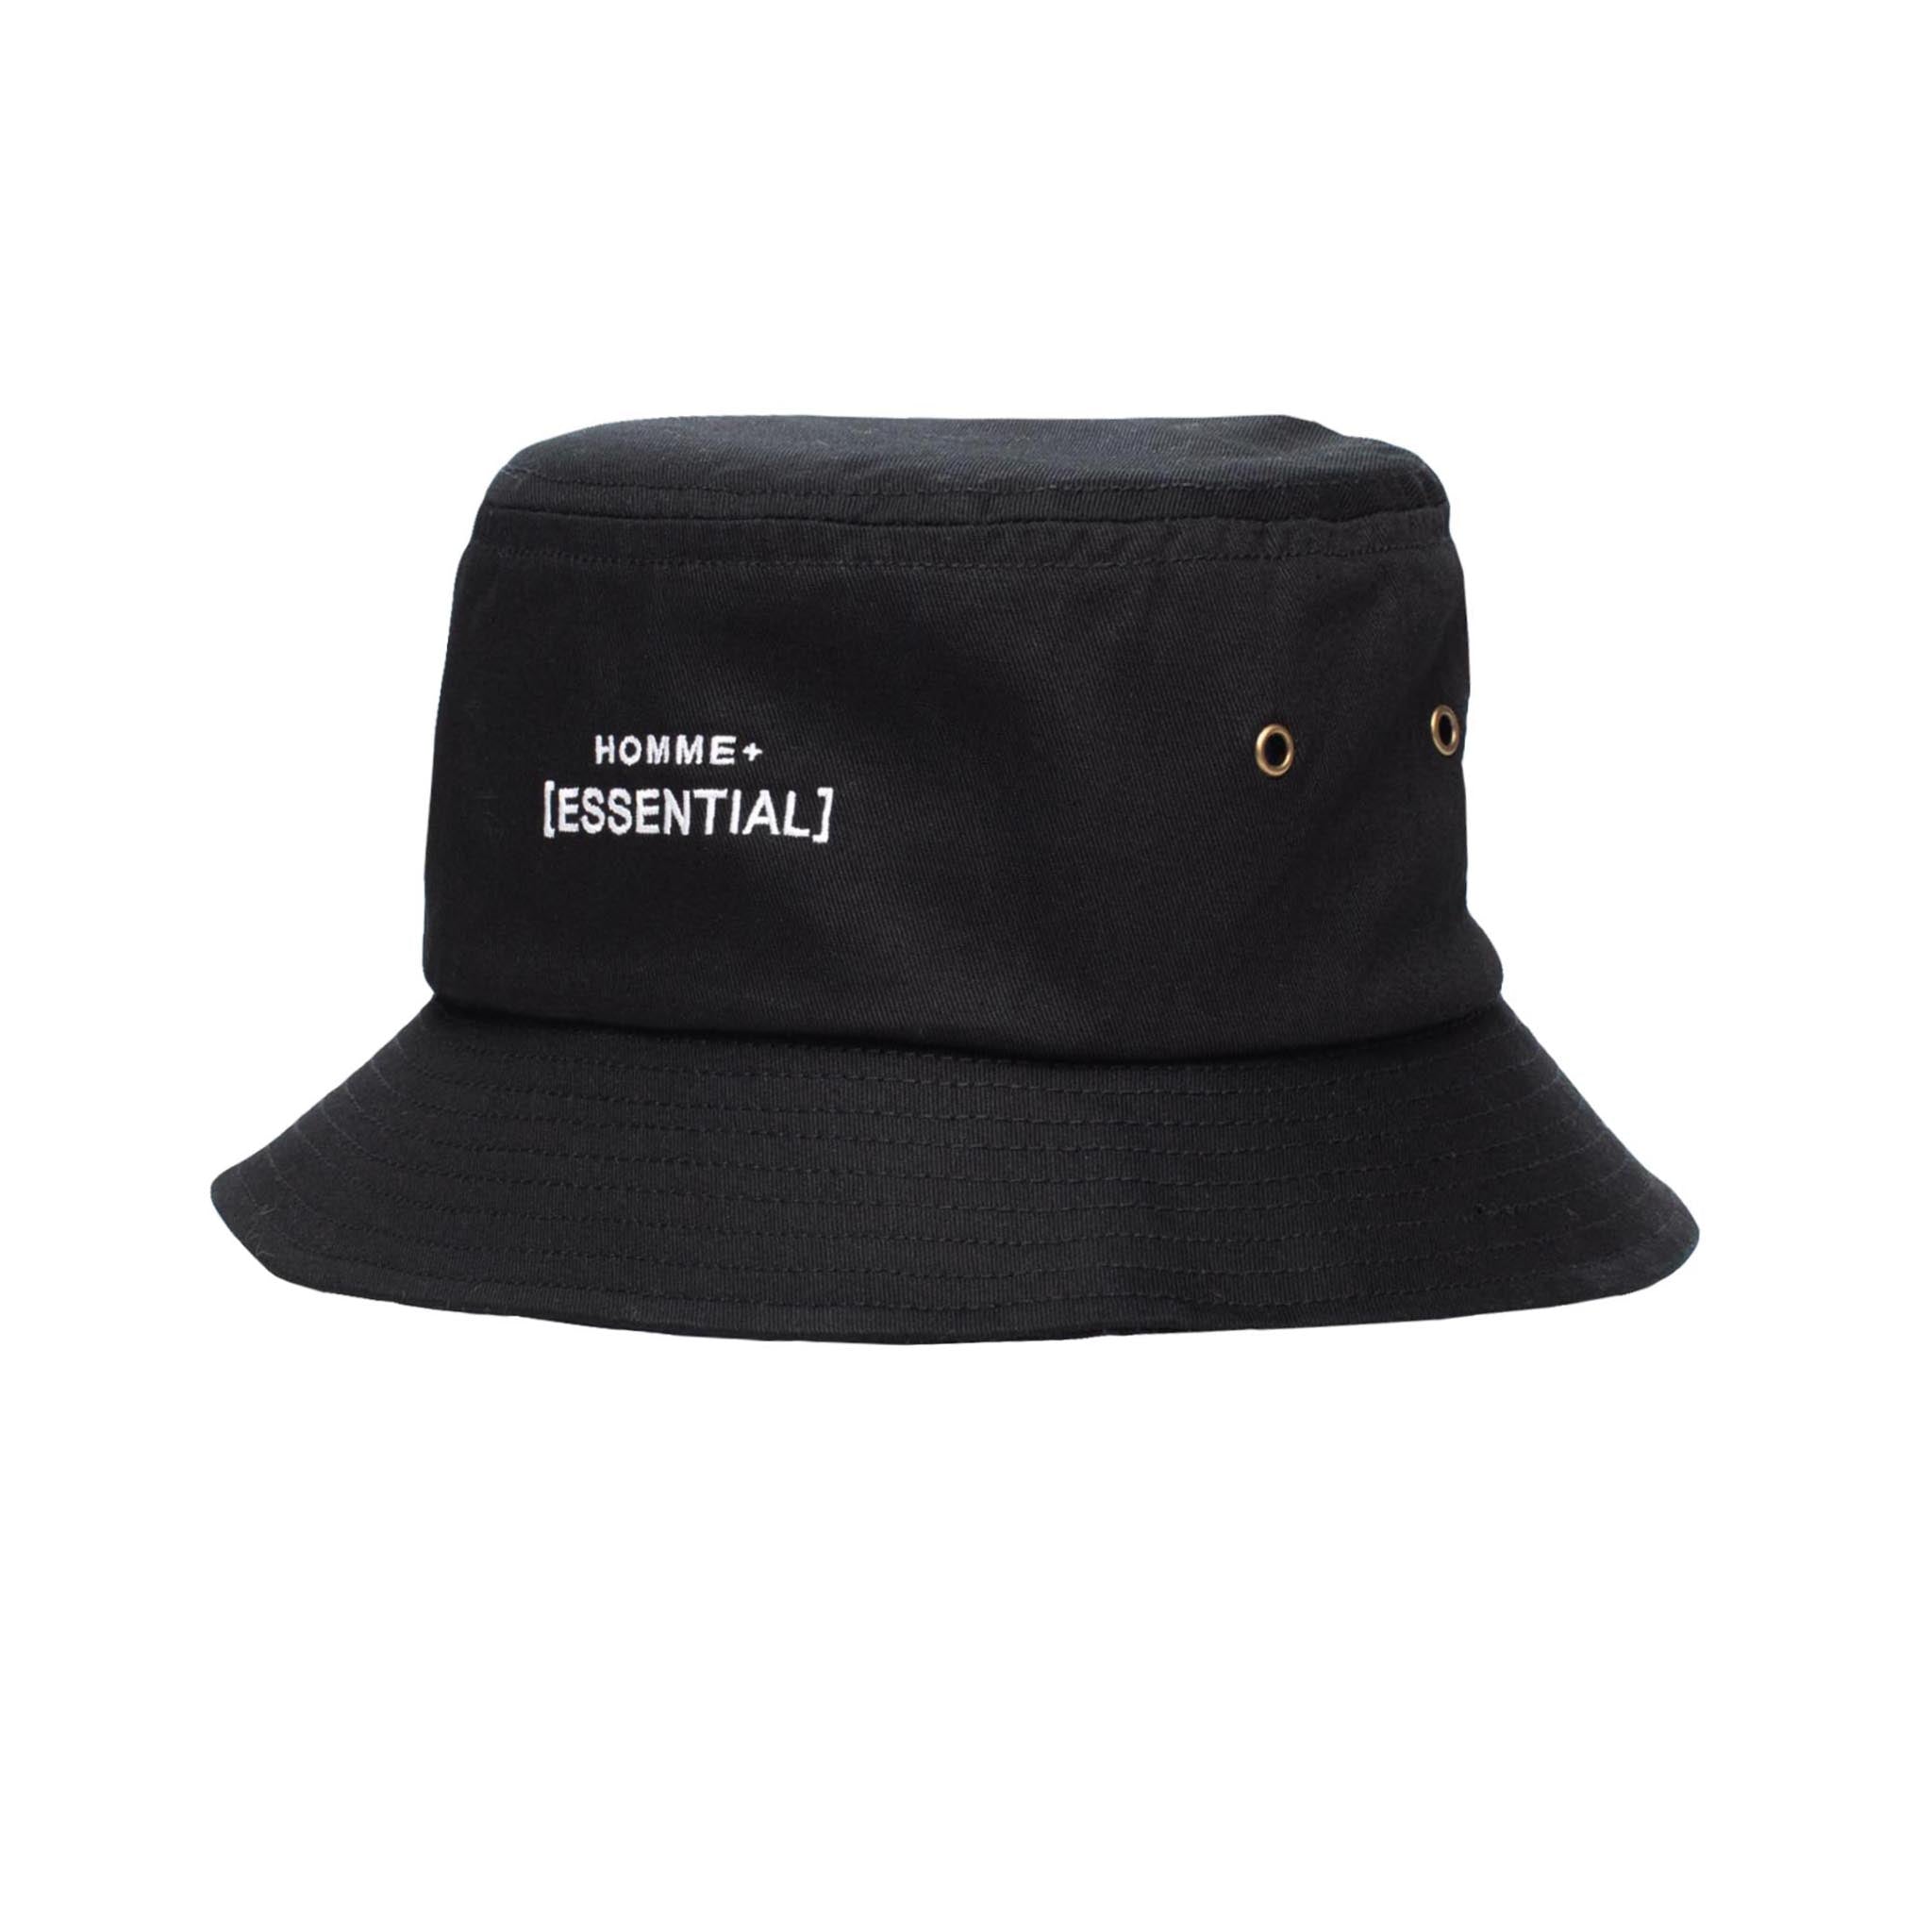 HOMME+ ESSENTIAL Bucket Hat Black/White